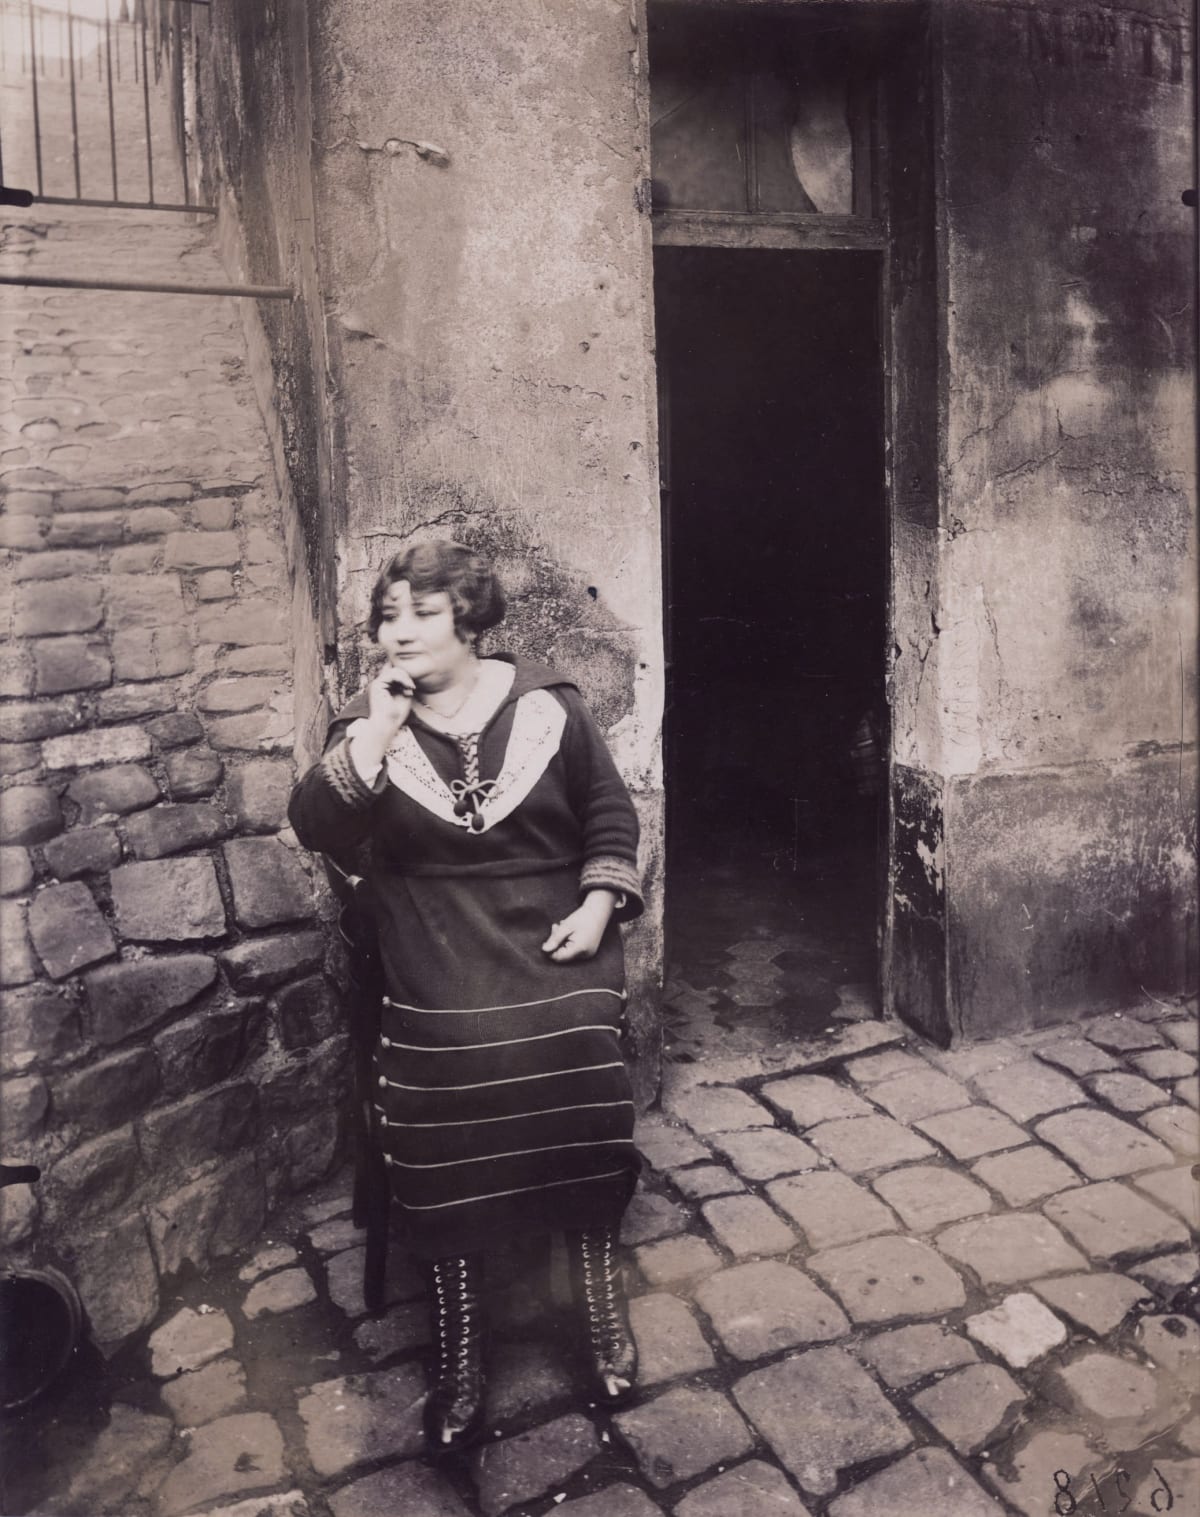 woman standing in street in 1920s Paris with door open behind her